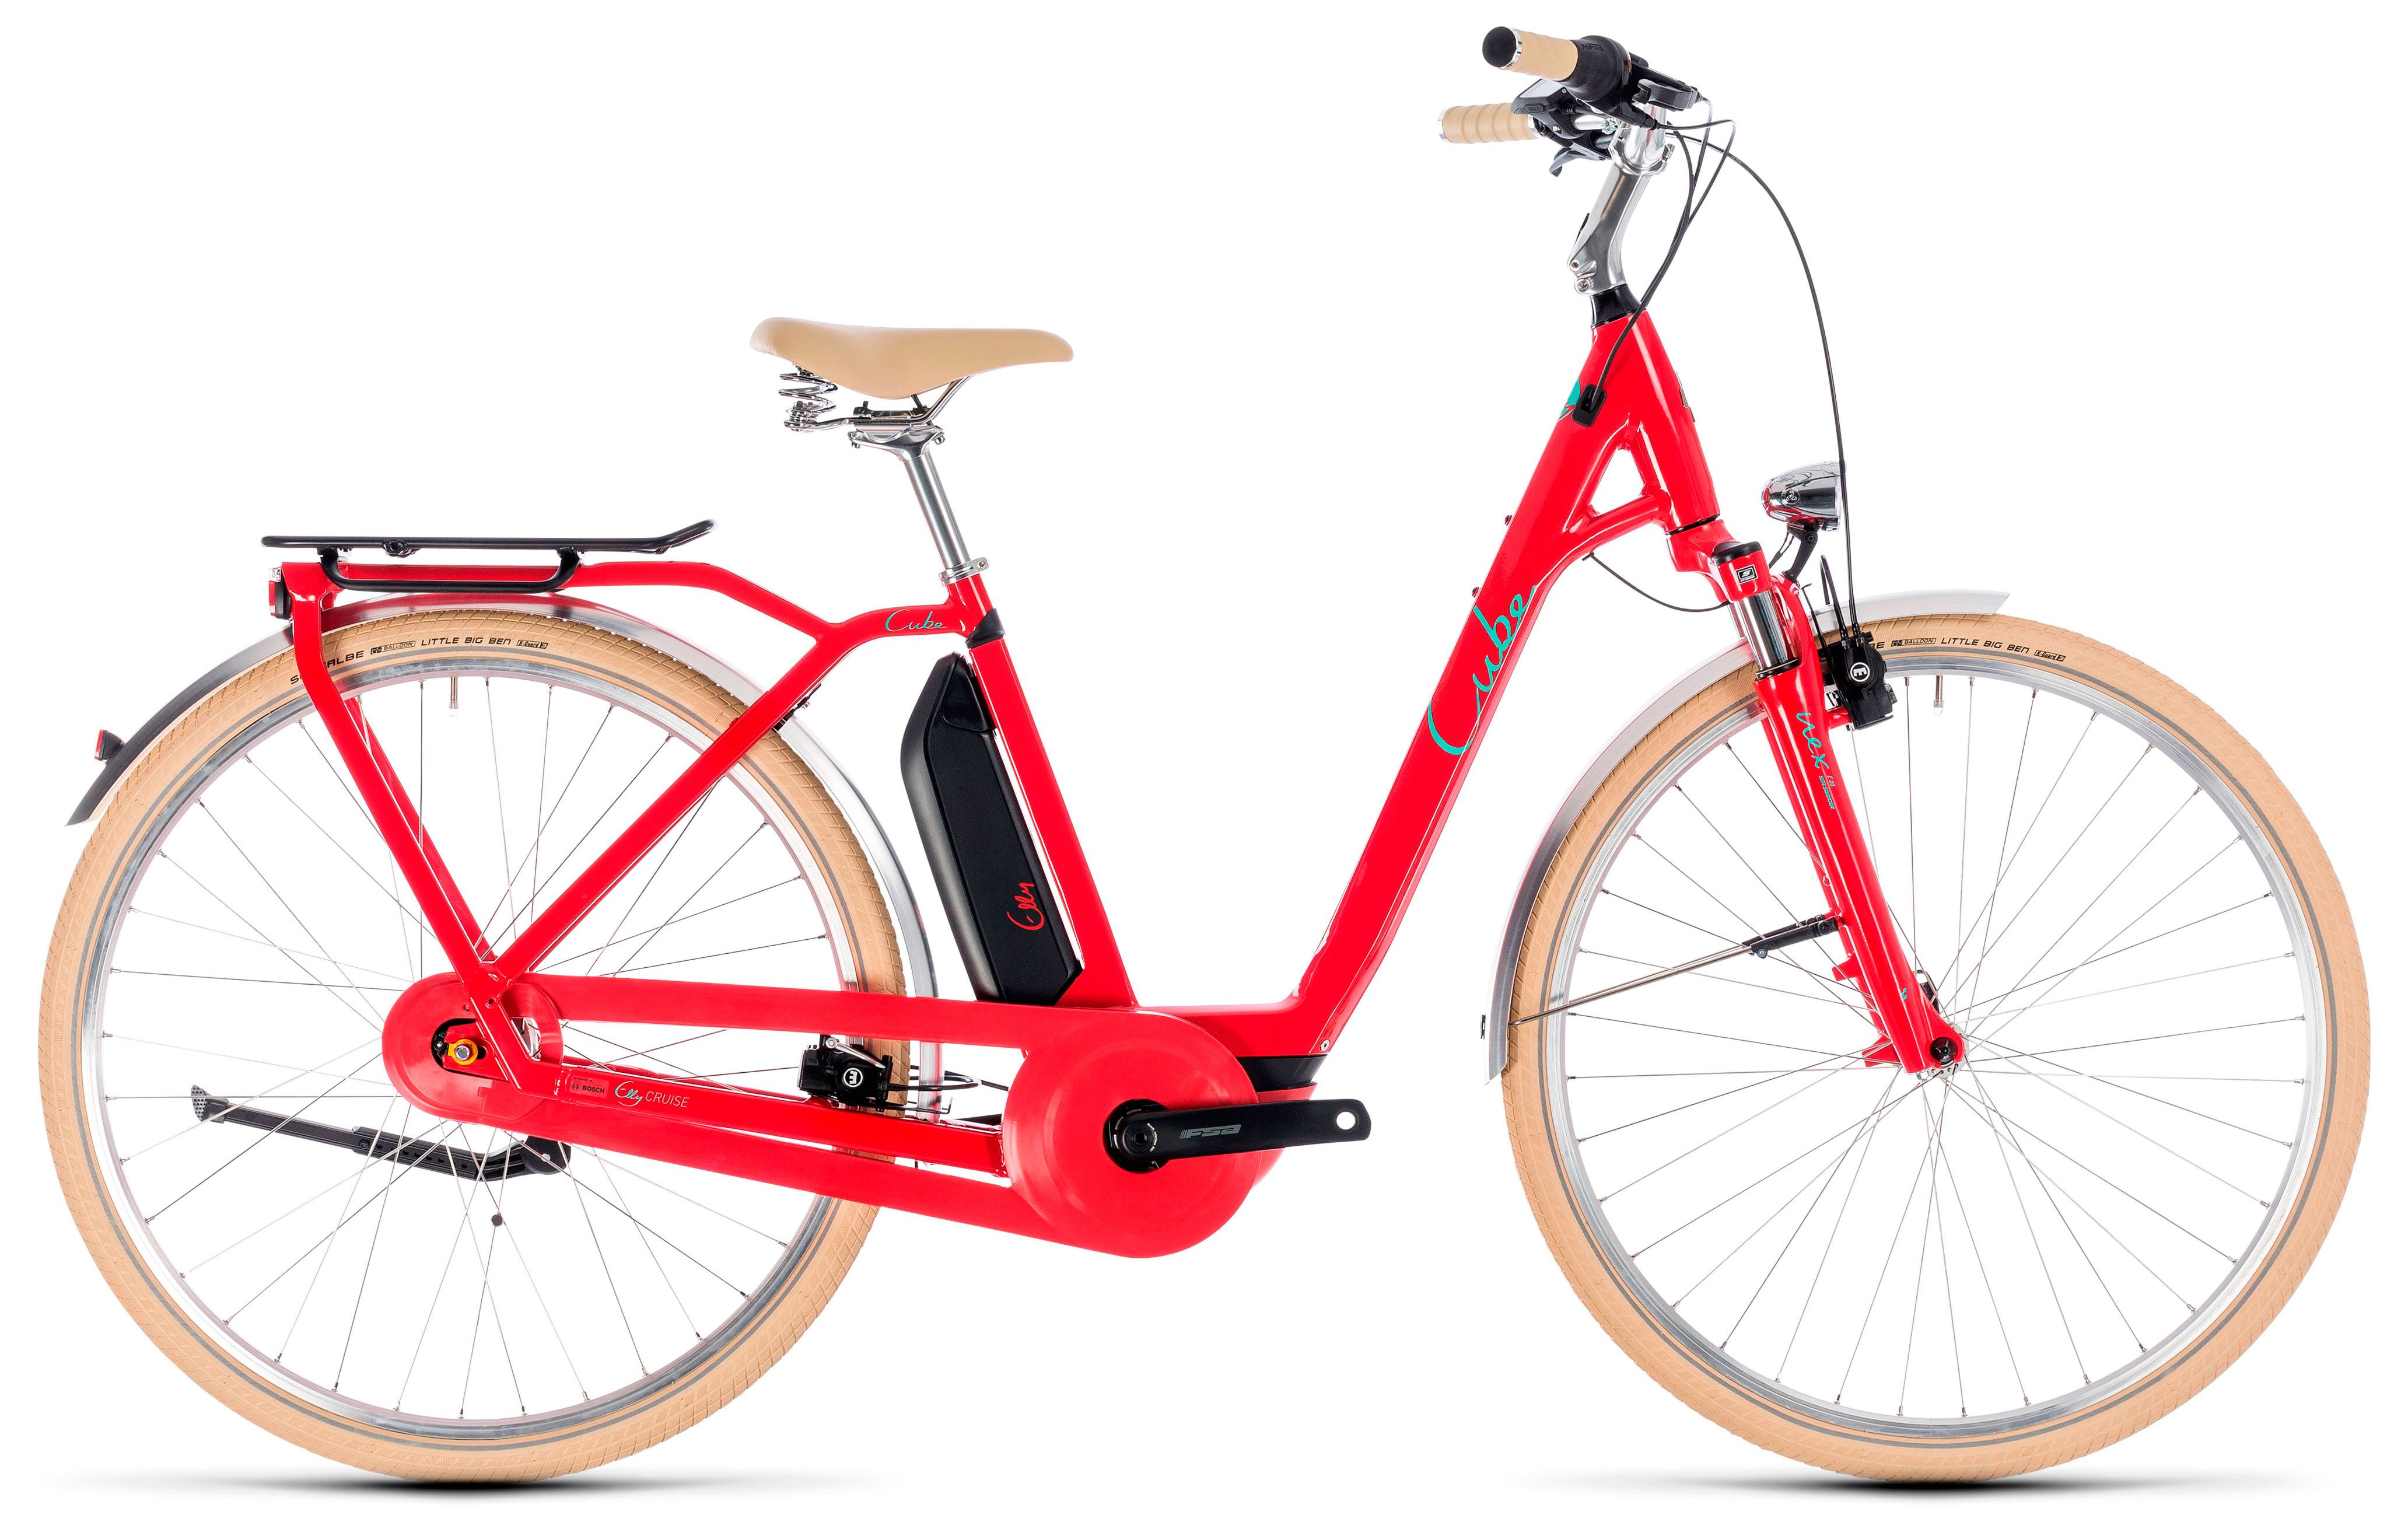  Отзывы о Трехколесный детский велосипед Cube Elly Cruise Hybrid 400 2018